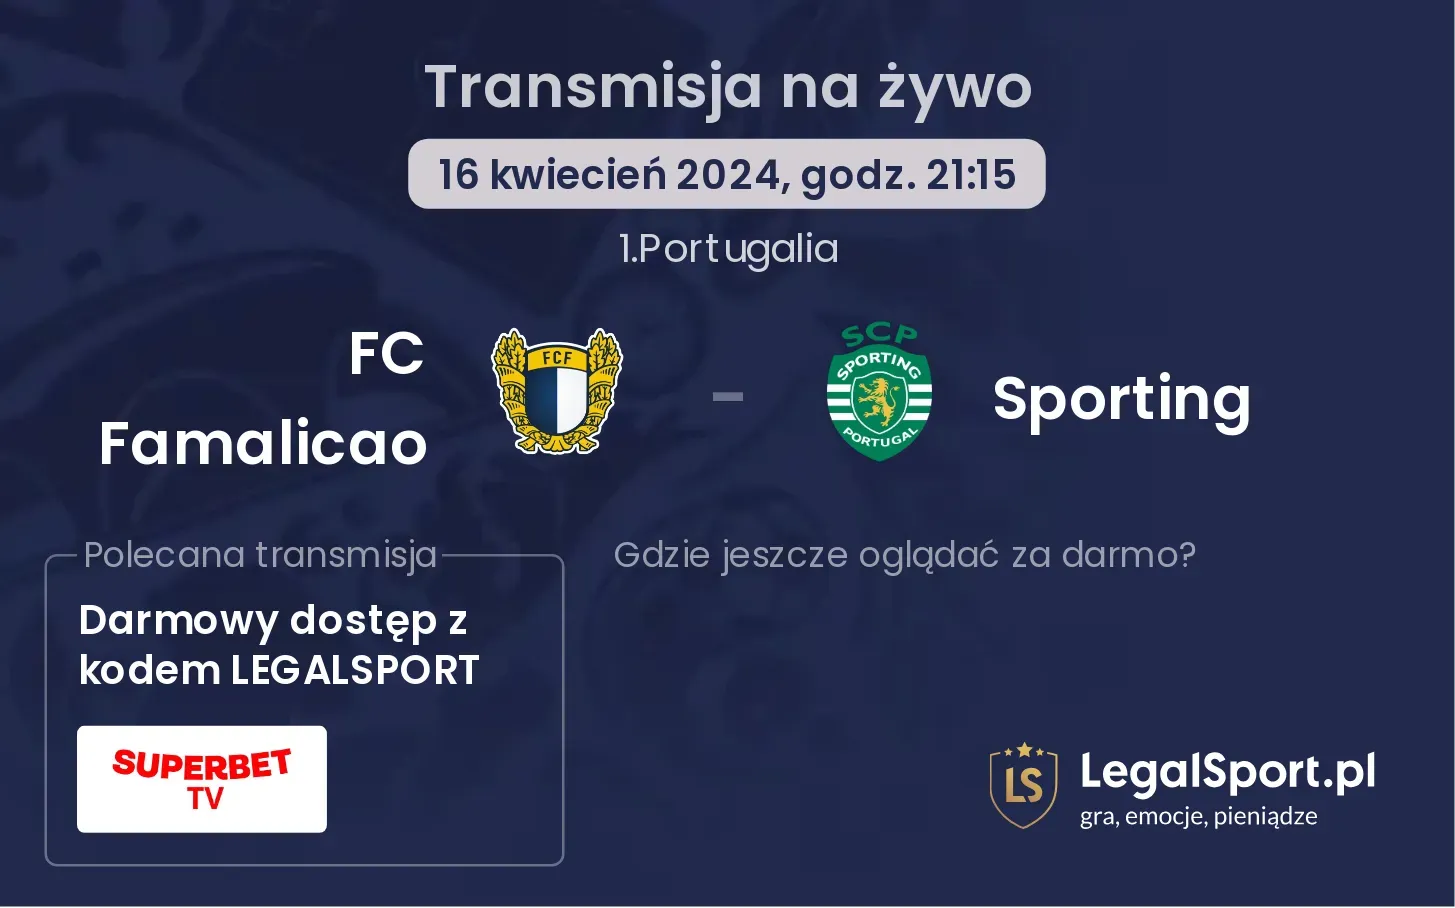 FC Famalicao - Sporting transmisja na żywo